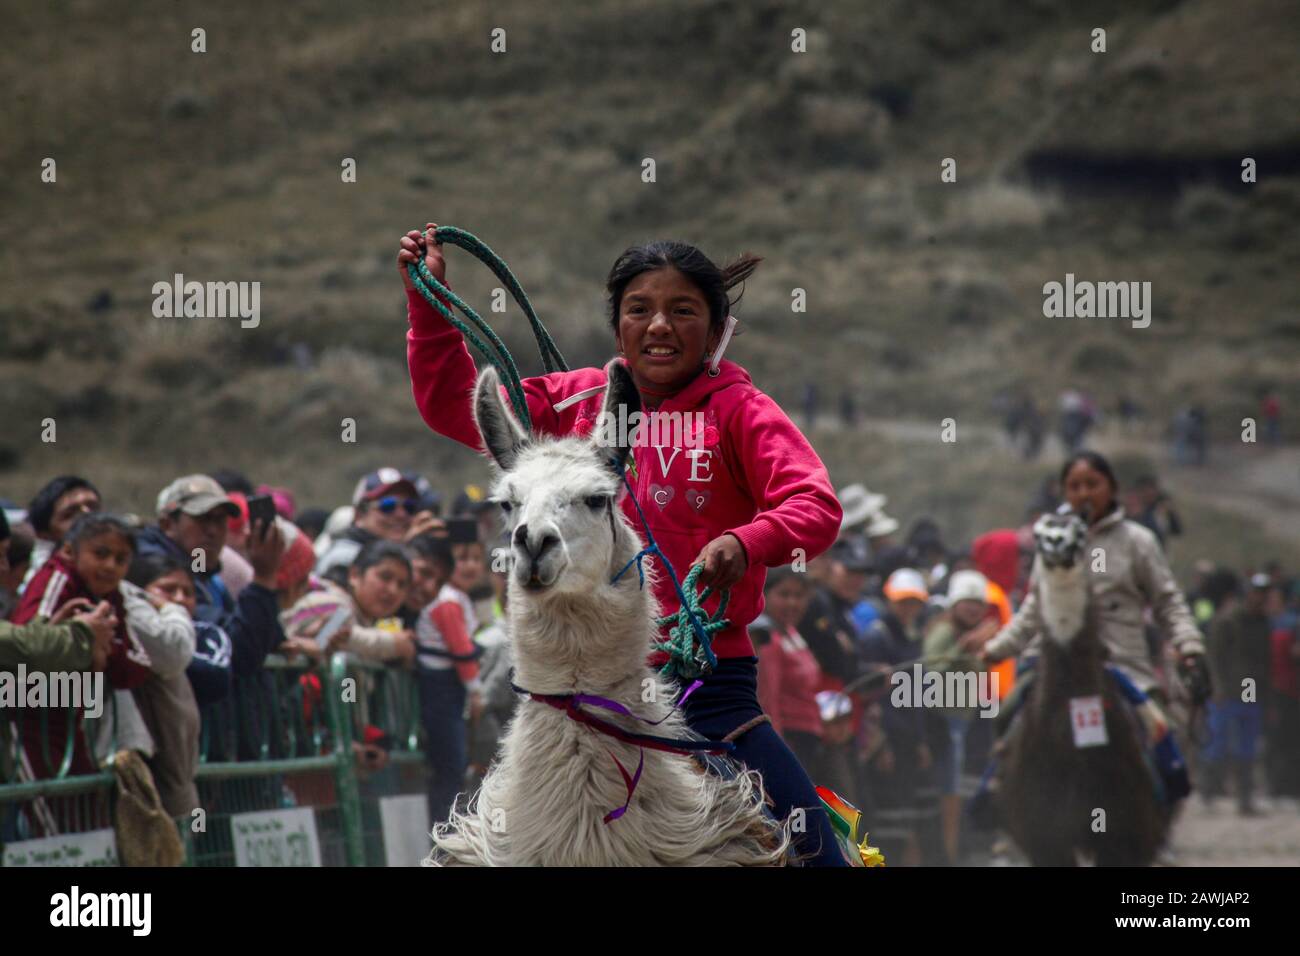 Quito, Équateur. 8 février 2020. La participante Irma Santafe conduit son llama et prend la troisième place dans la course traditionnelle de llama dans le parc national de Llanganates dans la province de Tungurahua à 4100 mètres d'altitude. Crédit: Juan Diego Monténégro//Dpa/Alay Live News Banque D'Images